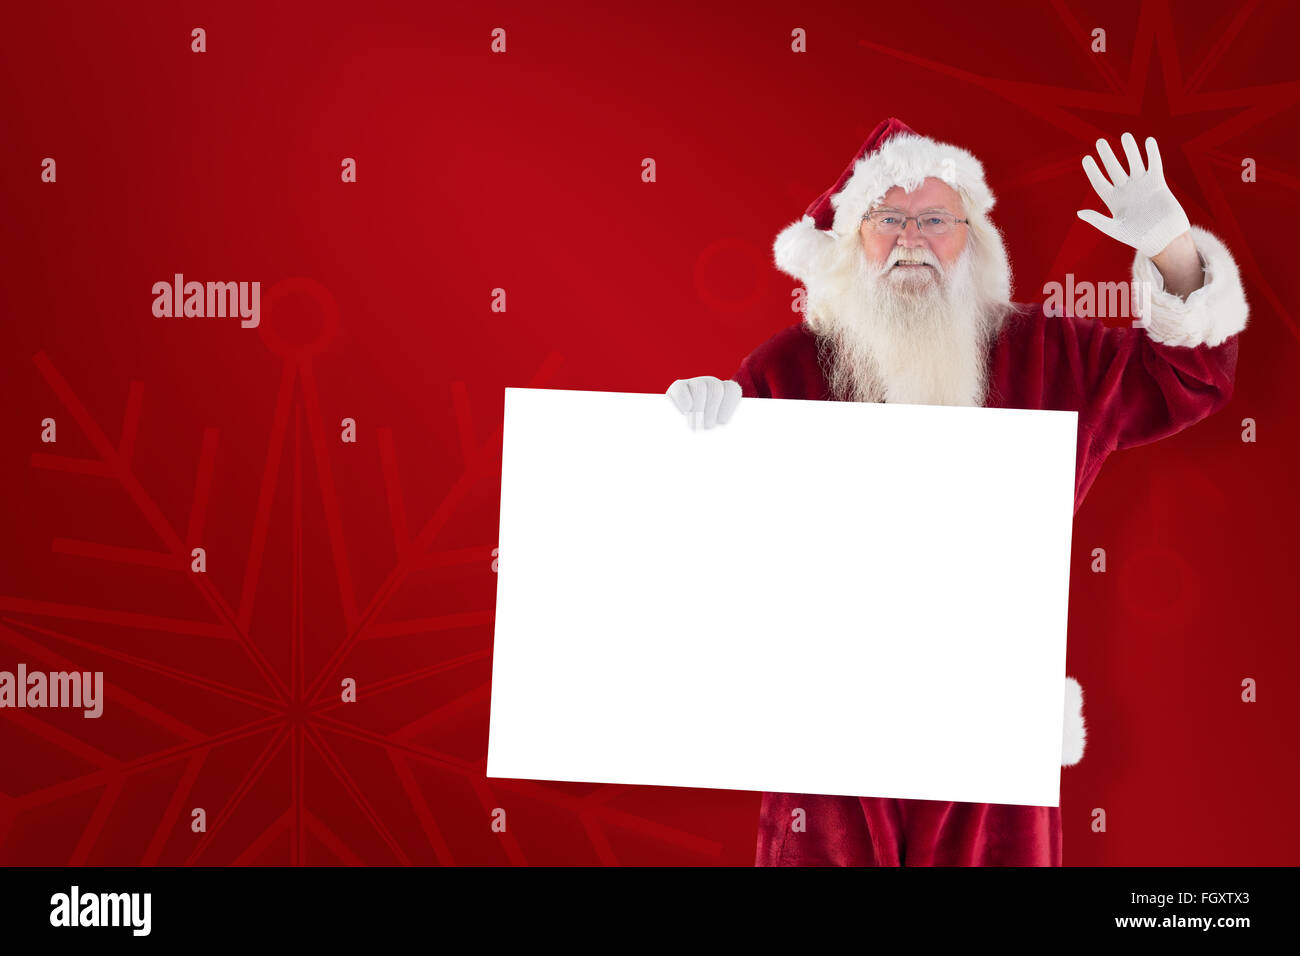 Zusammengesetztes Bild von Santa hält ein Schild und winkt Stockfoto